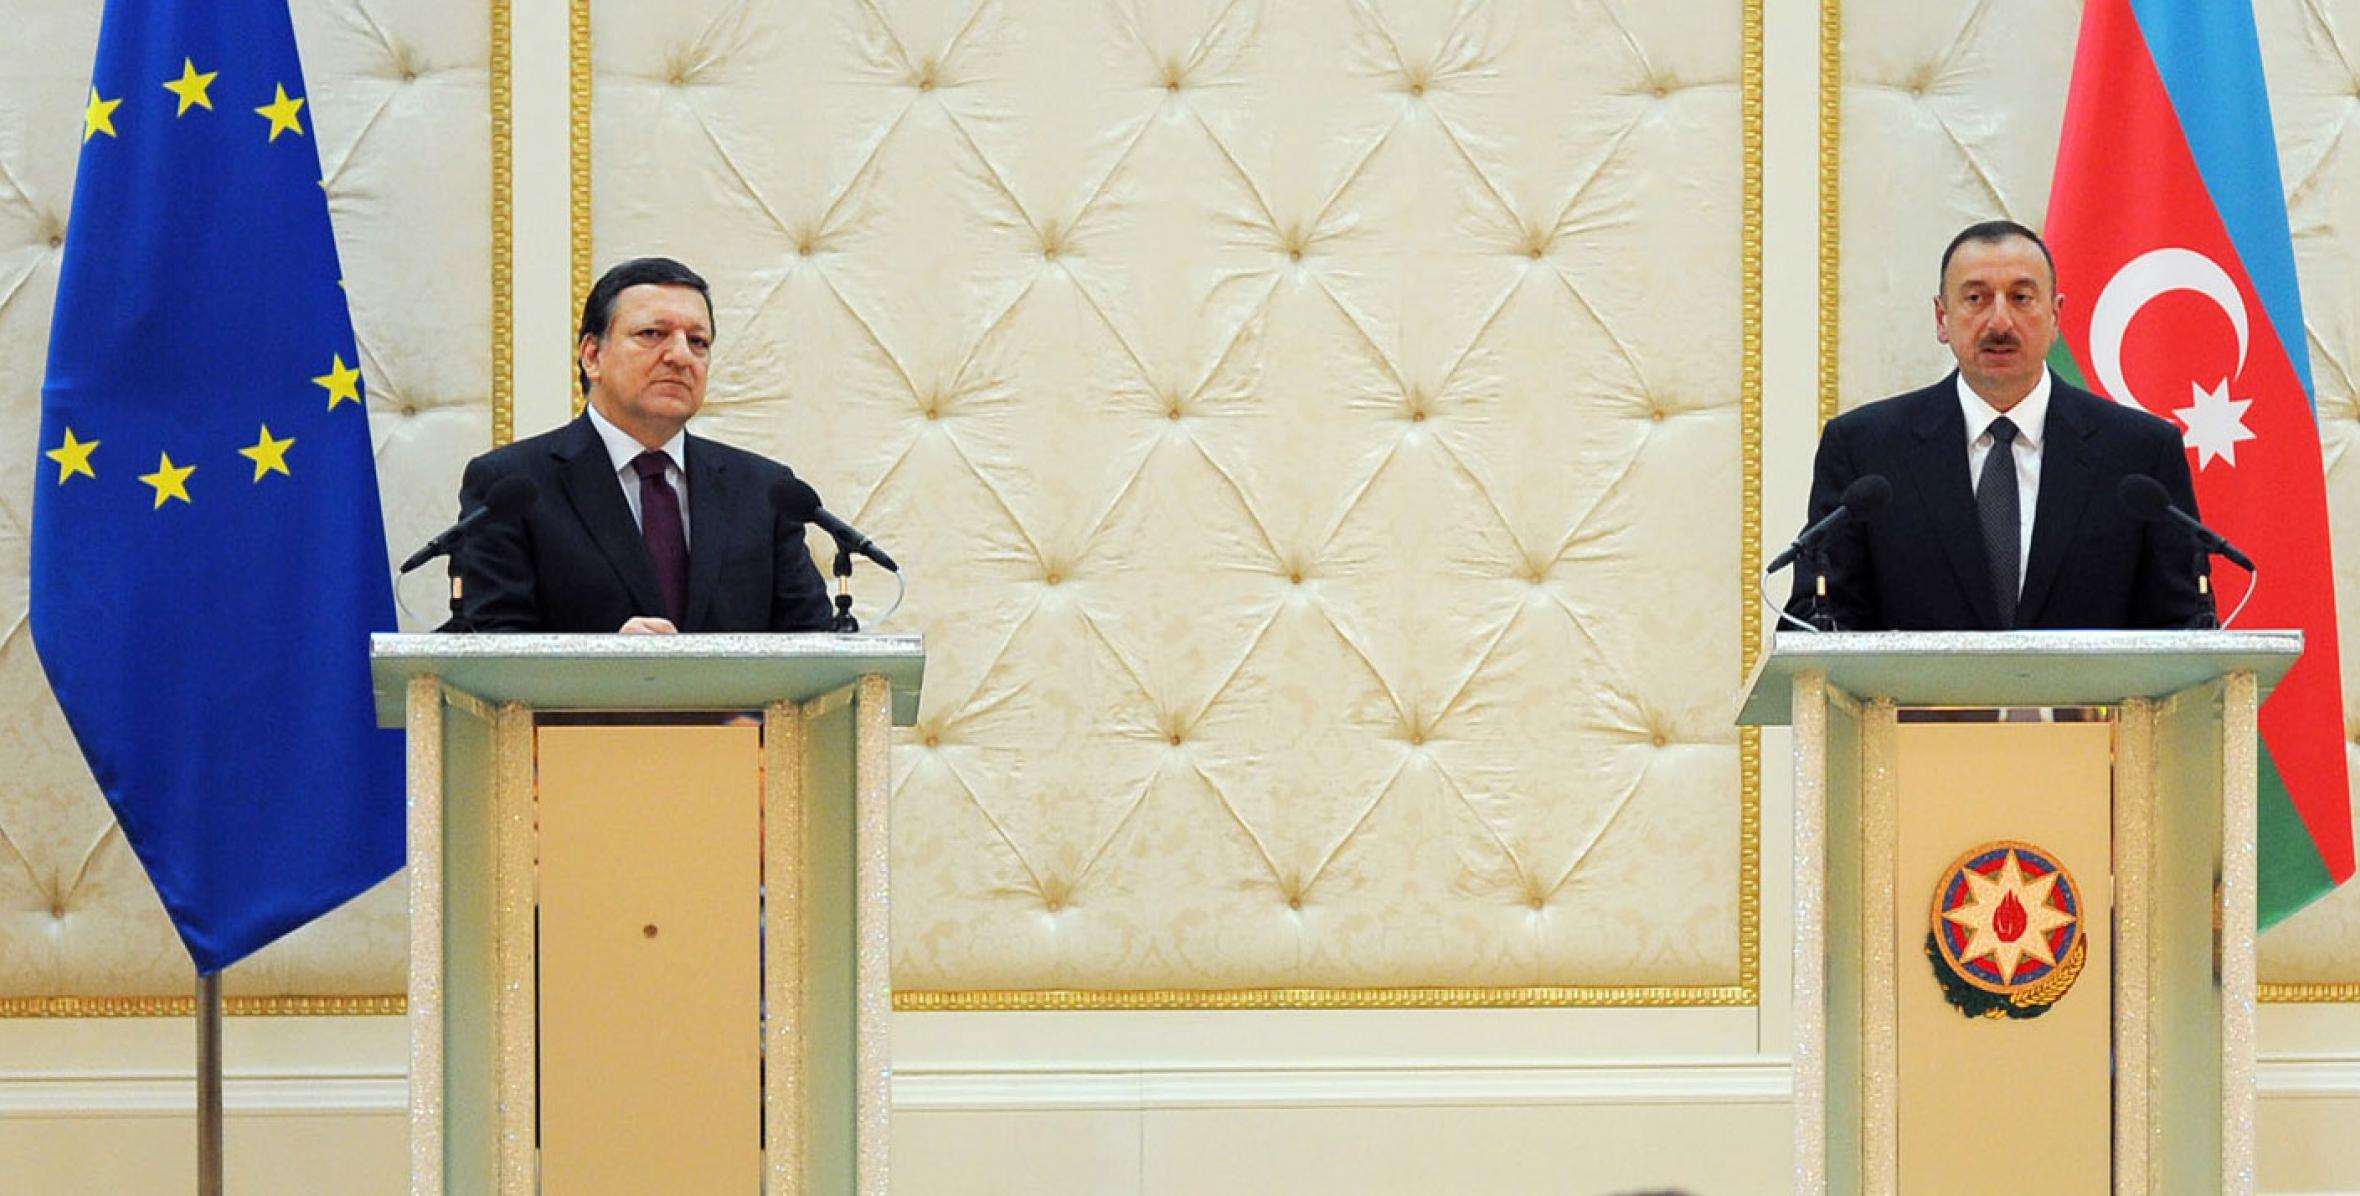 Состоялась пресс-конференция Ильхама Алиева и председателя Еврокомиссии Жозе Мануэля Баррозу